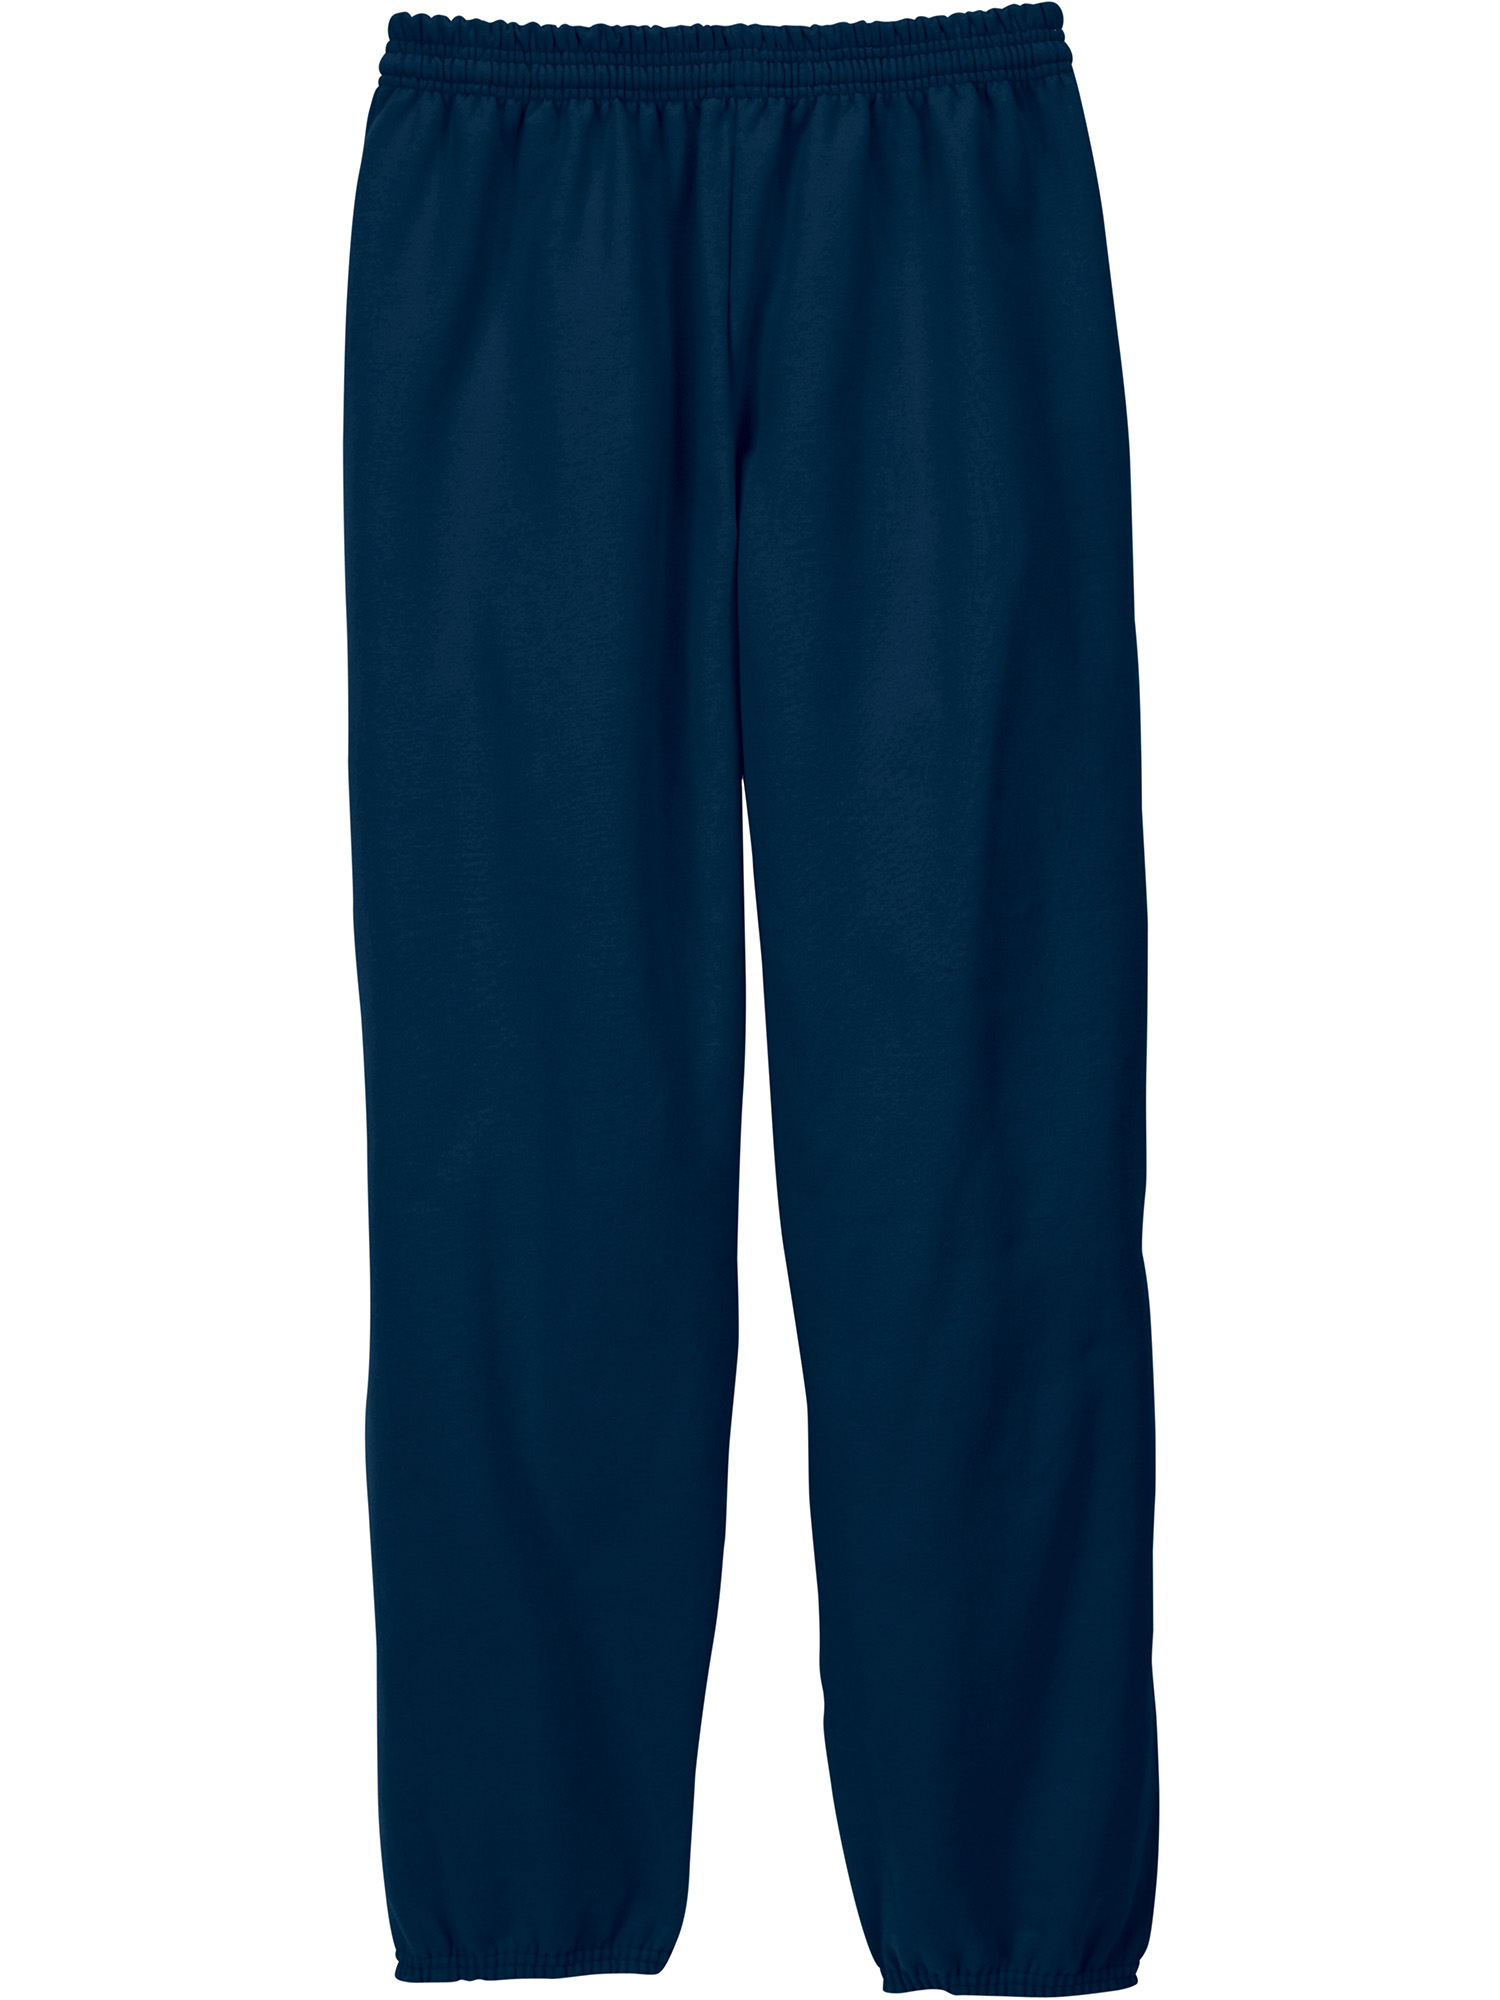 Hanes Men's and Big Men's EcoSmart Fleece Sweatpants, Sizes S-3XL - image 4 of 7